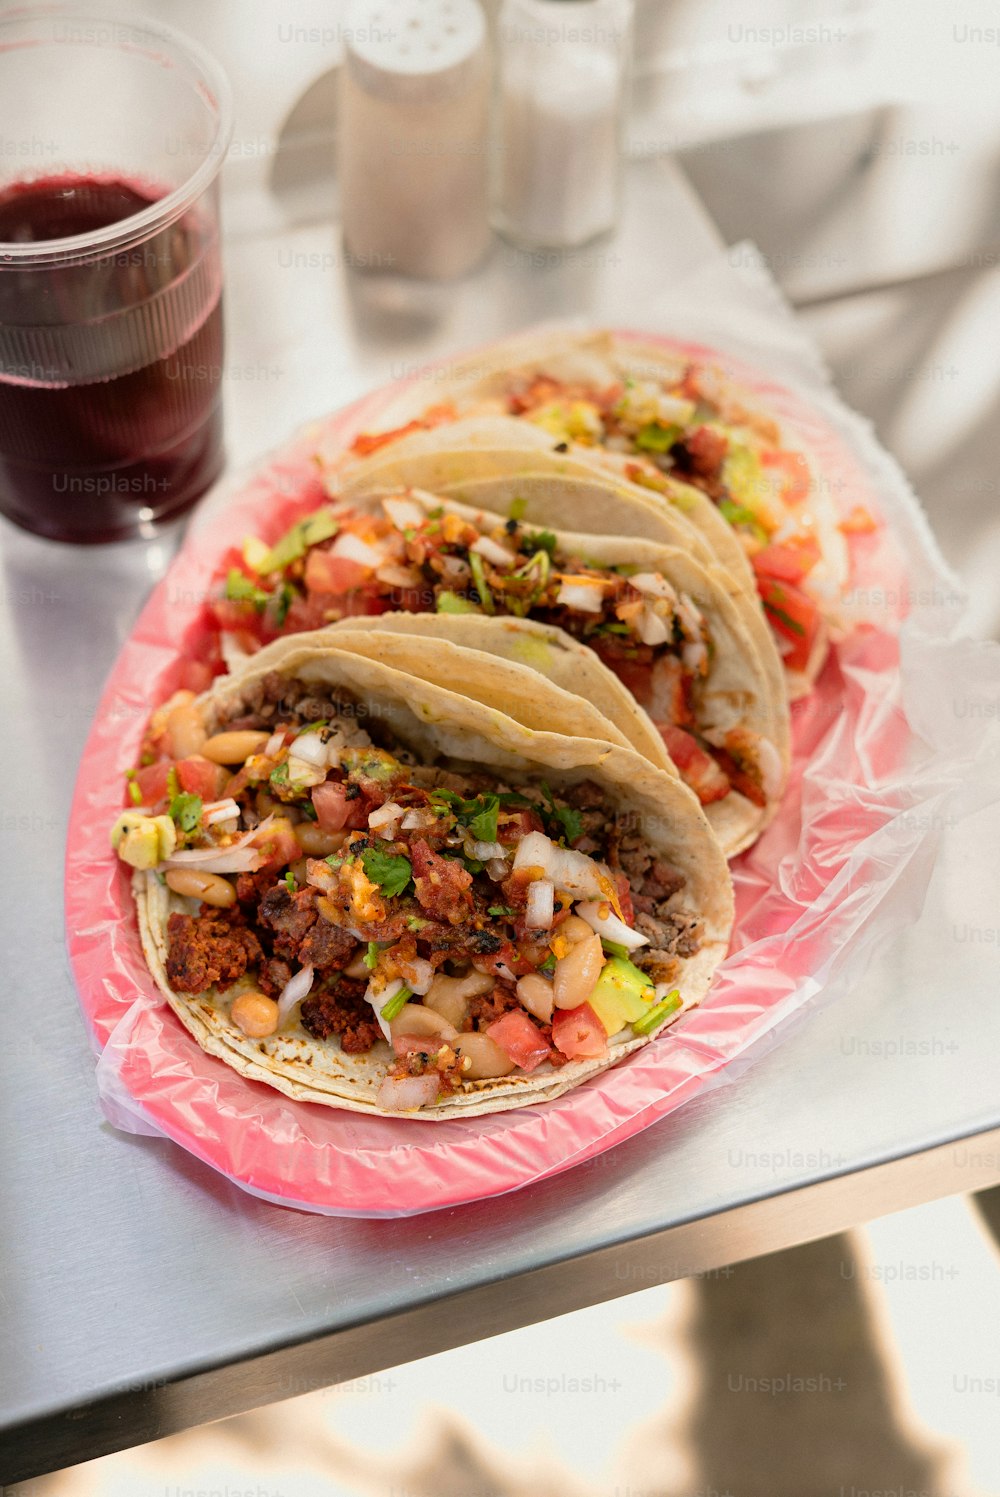 Drei Tacos sitzen auf einem rosa Teller neben einem Getränk